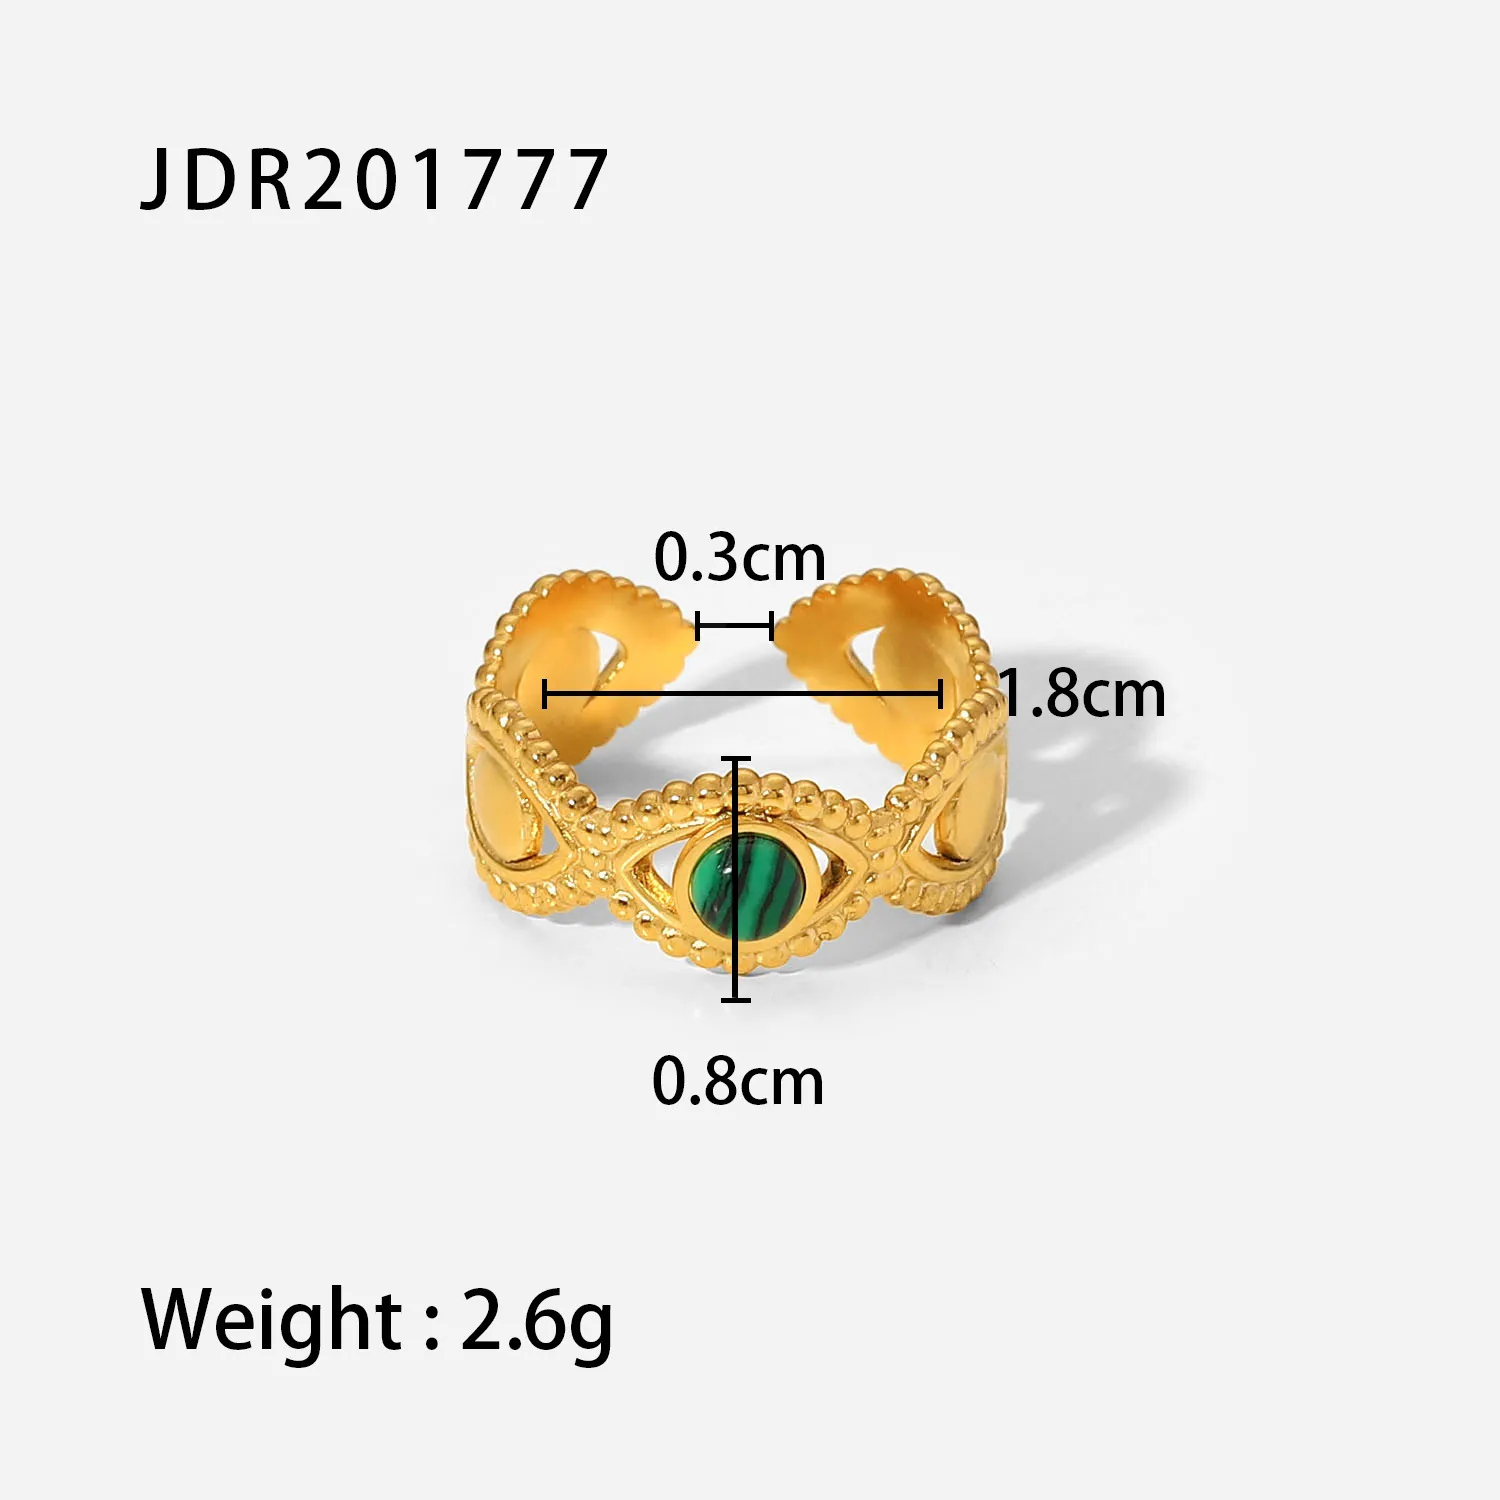 JDR201777 size